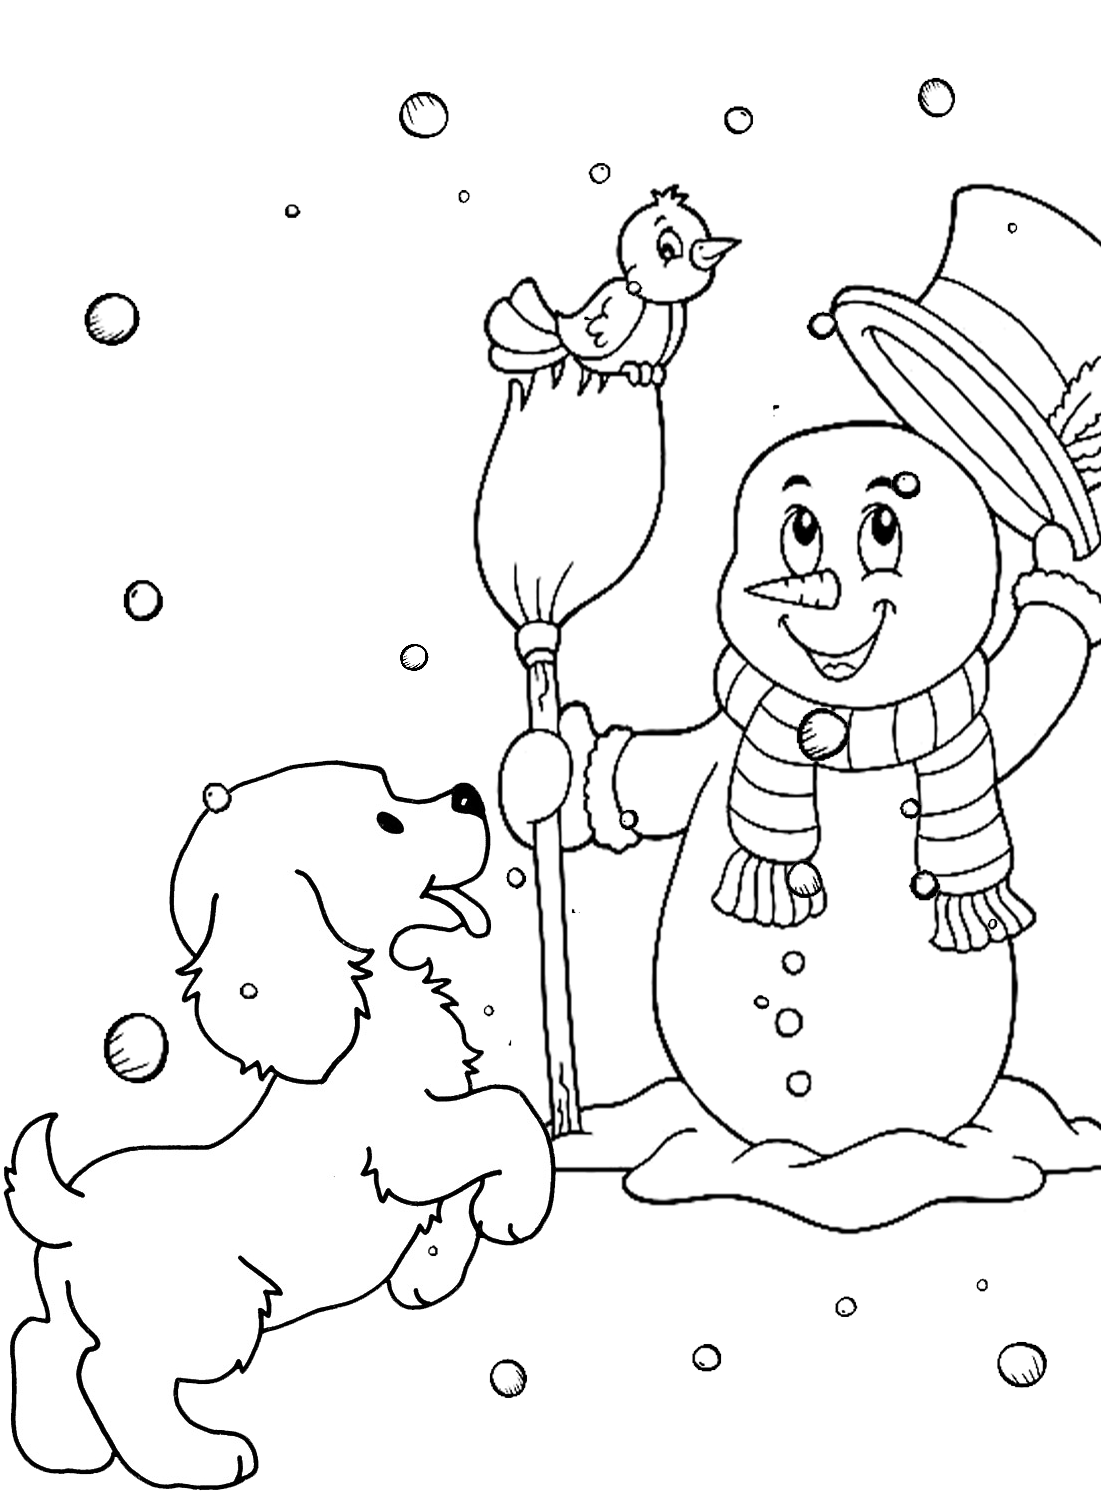 صفحة ملونة لرجل الثلج والجرو من الجرو